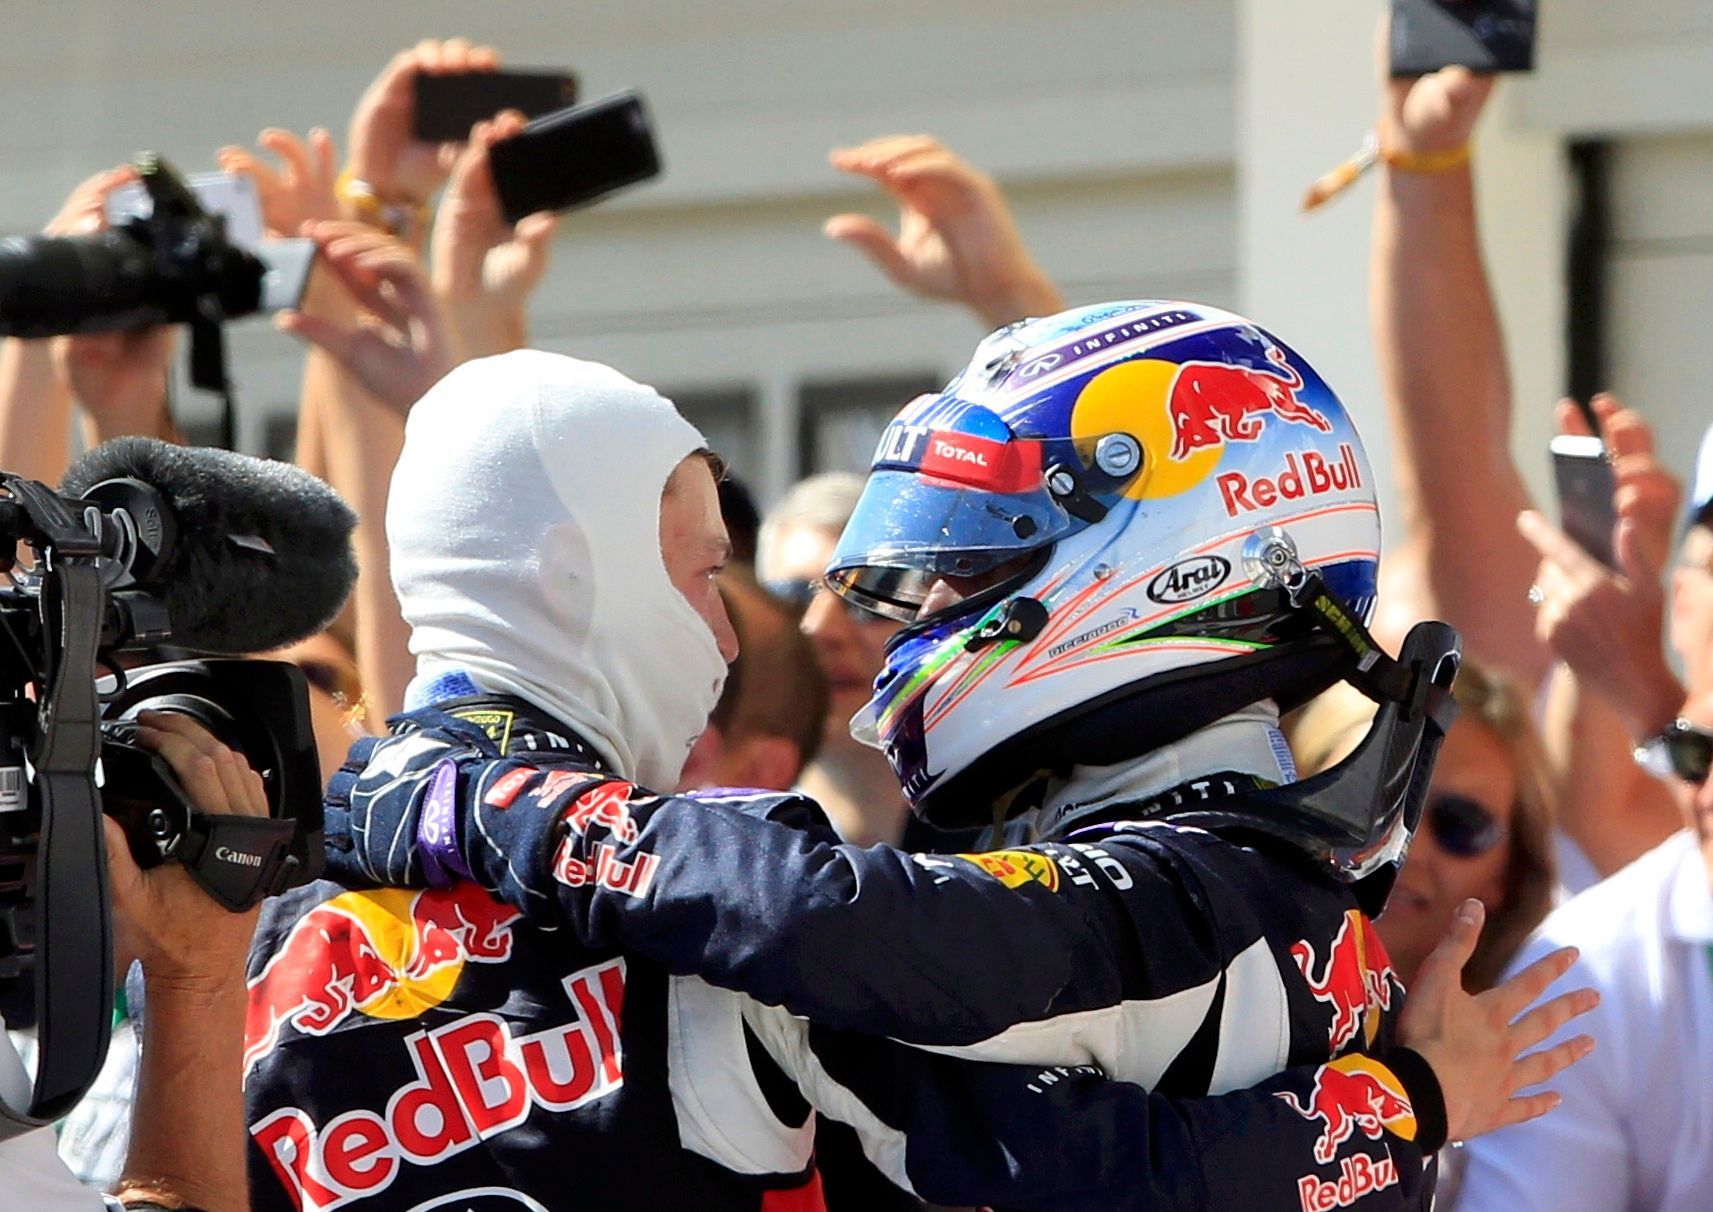 F1, VC Maďarska 2015: Daniil Kvjat a Daniel Ricciardo, Red Bull